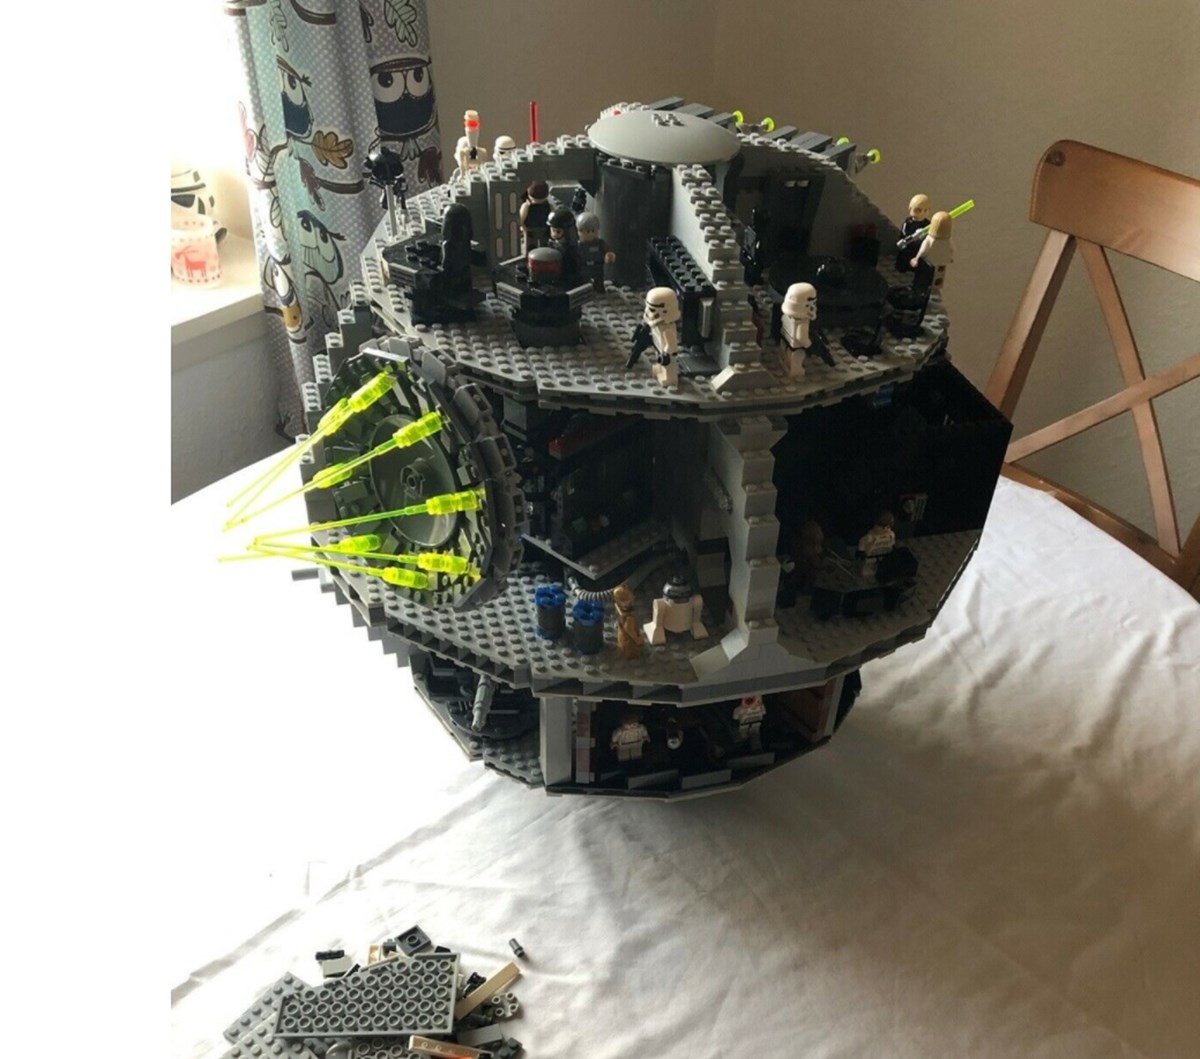 Lego Star Wars kan du finde en masse af på DBA, og denne model er lige nu til salg for 1.500 kroner. Det er Peder fra Rønde i Jylland, der har denne dødsstjerne til salg.